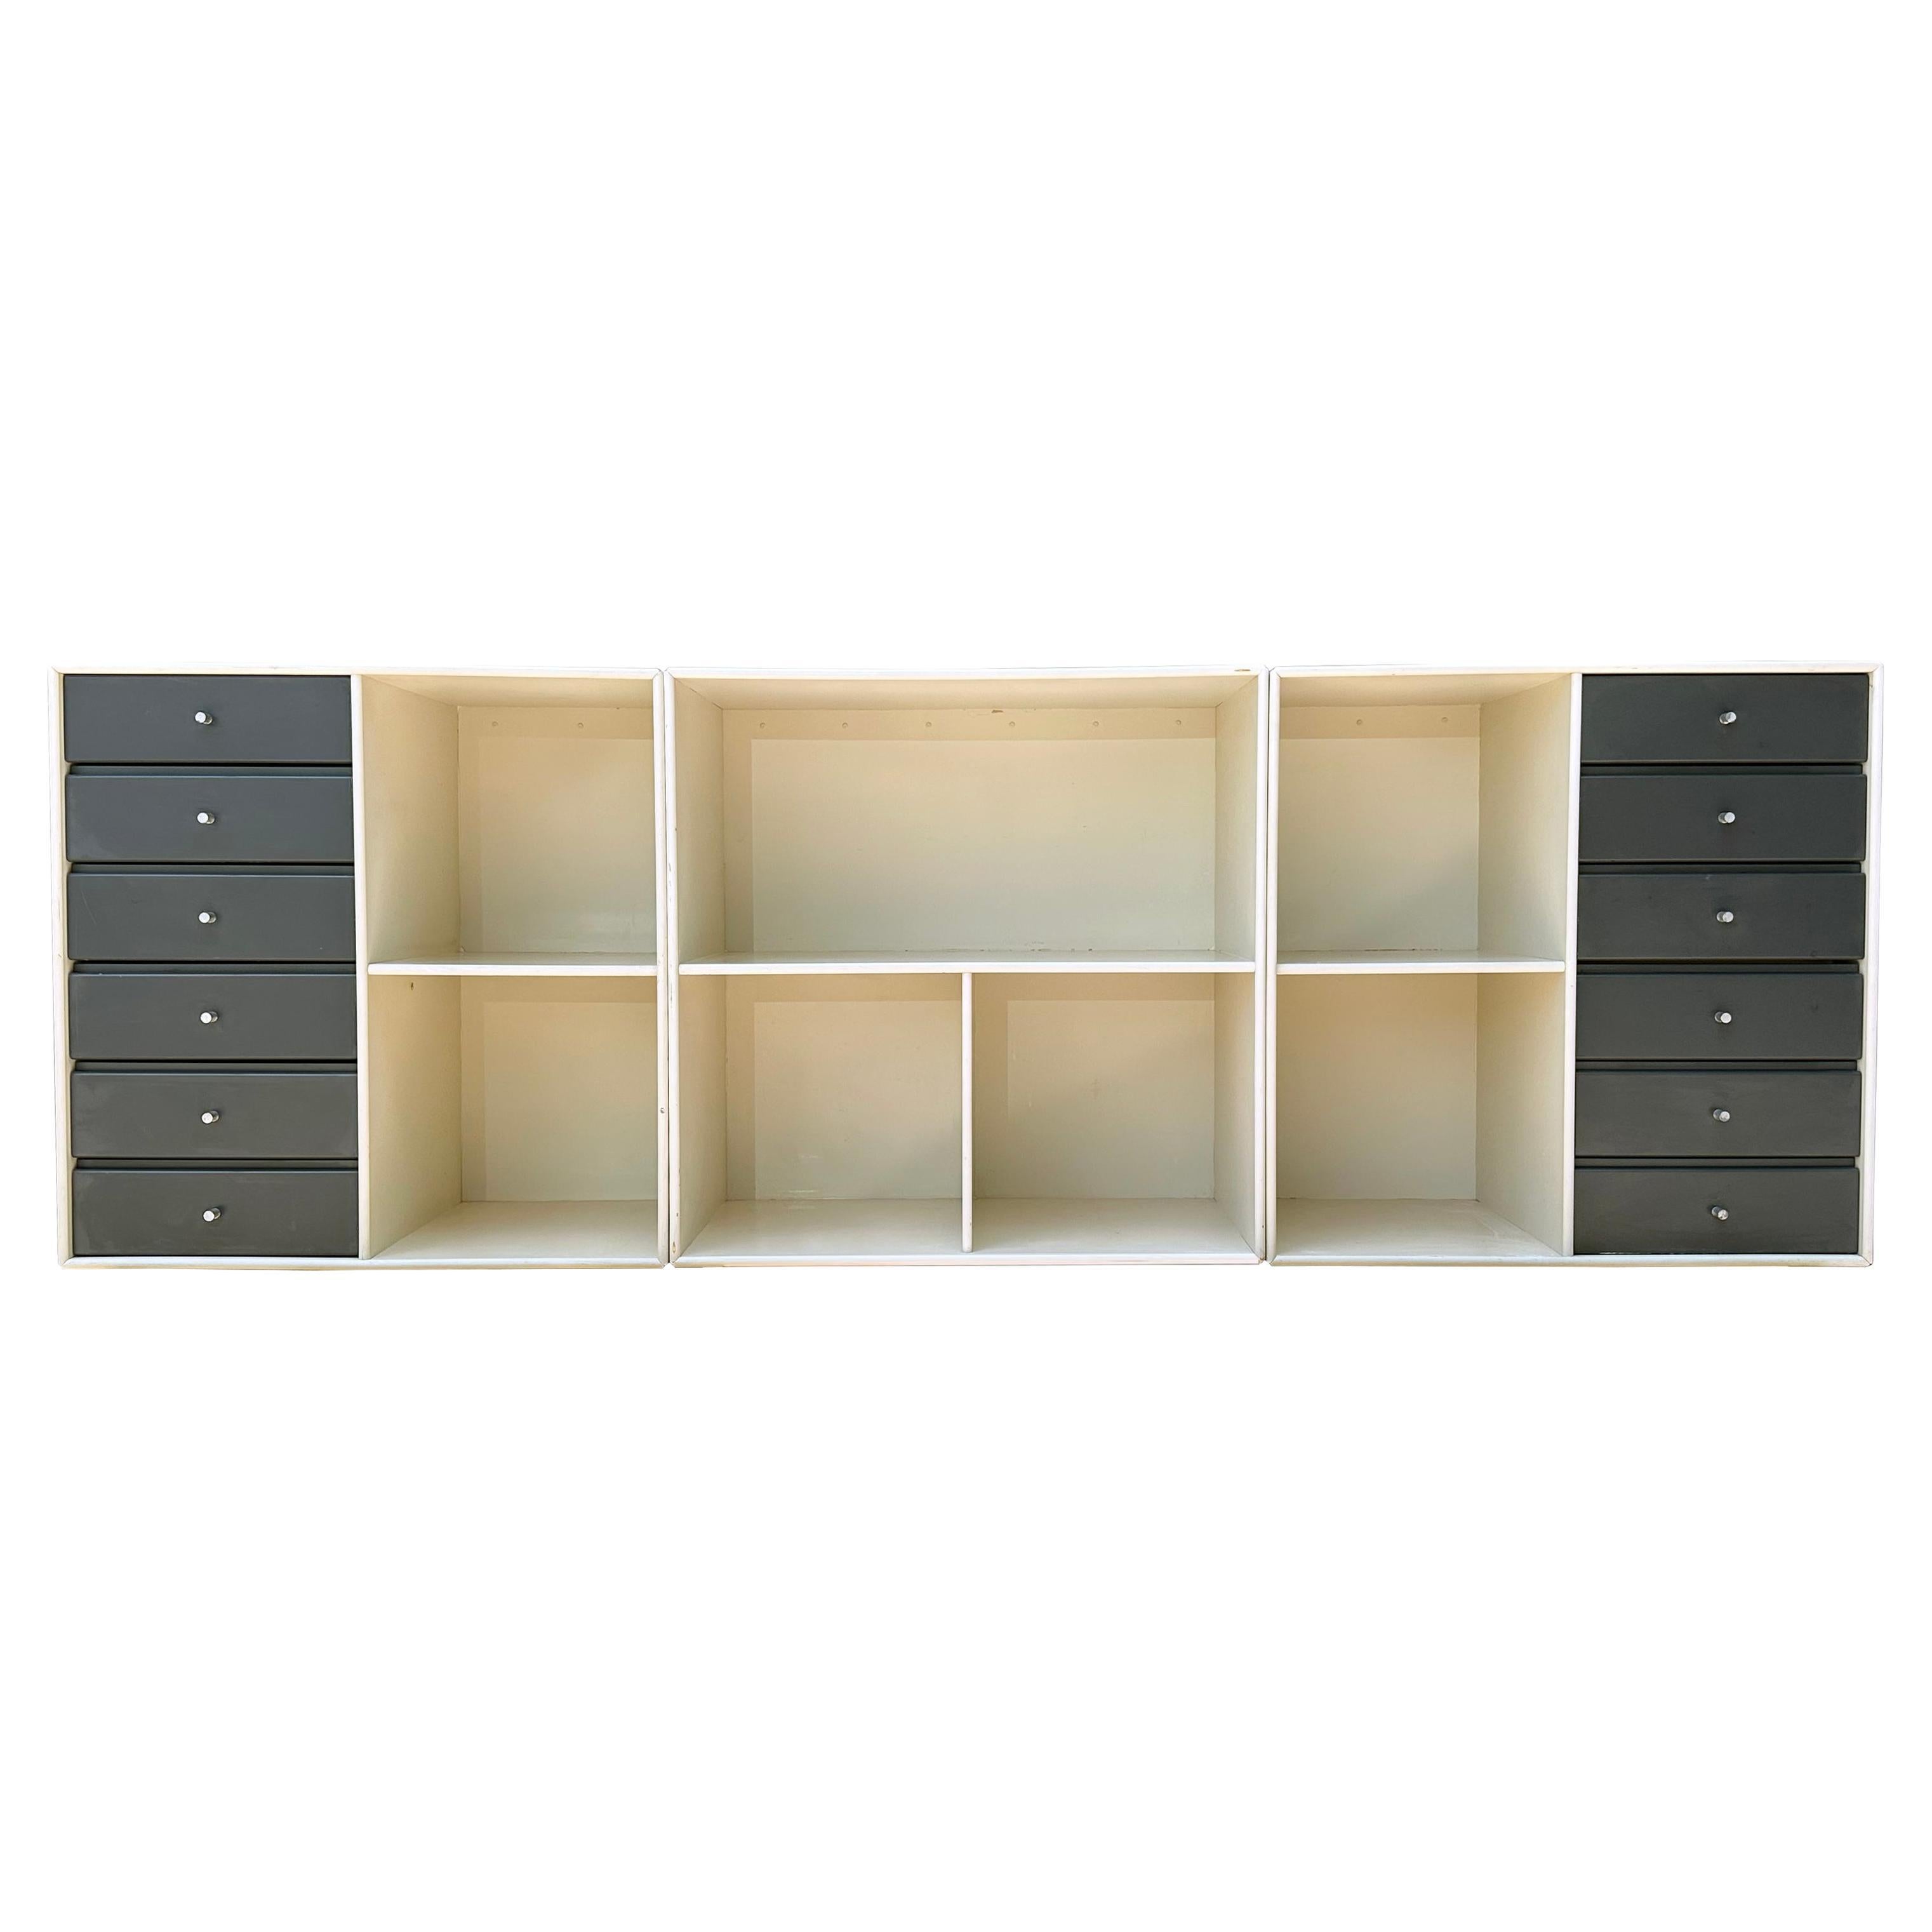 Dänische moderne 3-teilige modulare Hänge-Credenza von Peter J. Lassen für Montana Mobler. Dieses Stück kann an die Wand gehängt, gestapelt oder auf den Boden gestellt werden. Das Set enthält 2 gegenüberliegende Regale mit 6 Schubladen und 1 offenes